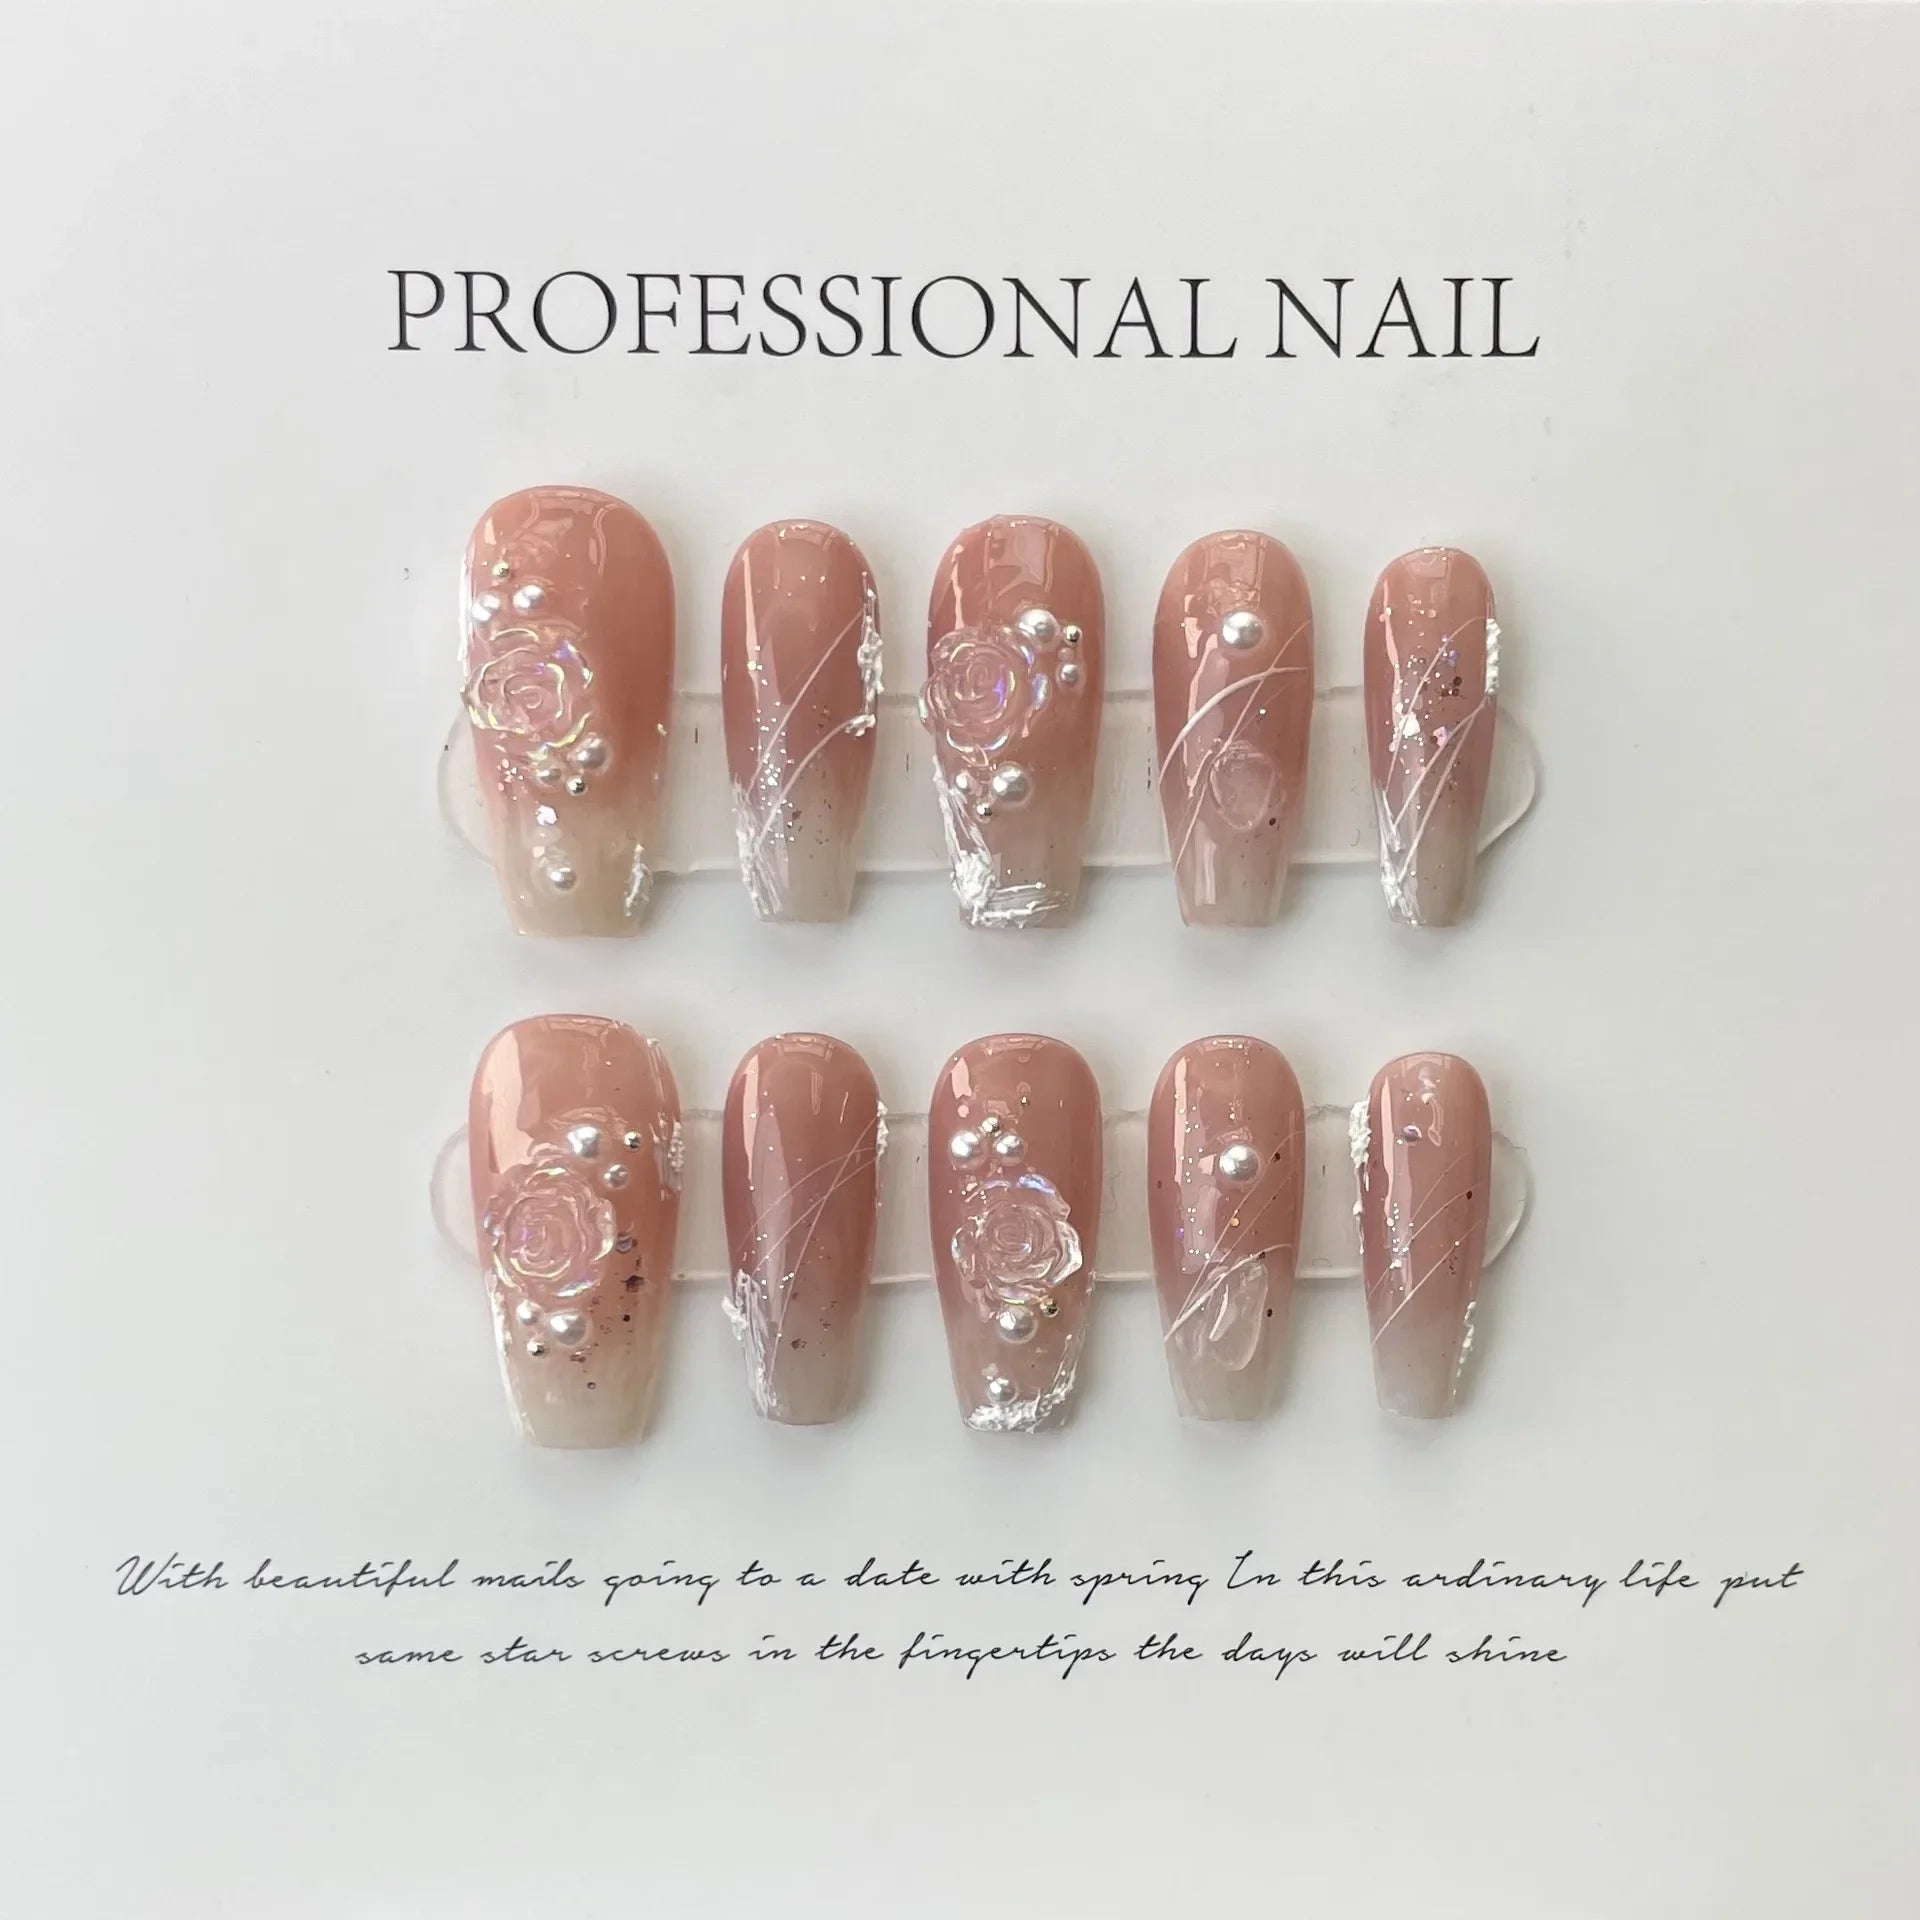 QSEZENY Handgemaakte Japanse neppers op nagels met ontwerp van hoge kwaliteit draagbare ballerina nagels kunstmatige Koreaanse nagelbenodigdheden